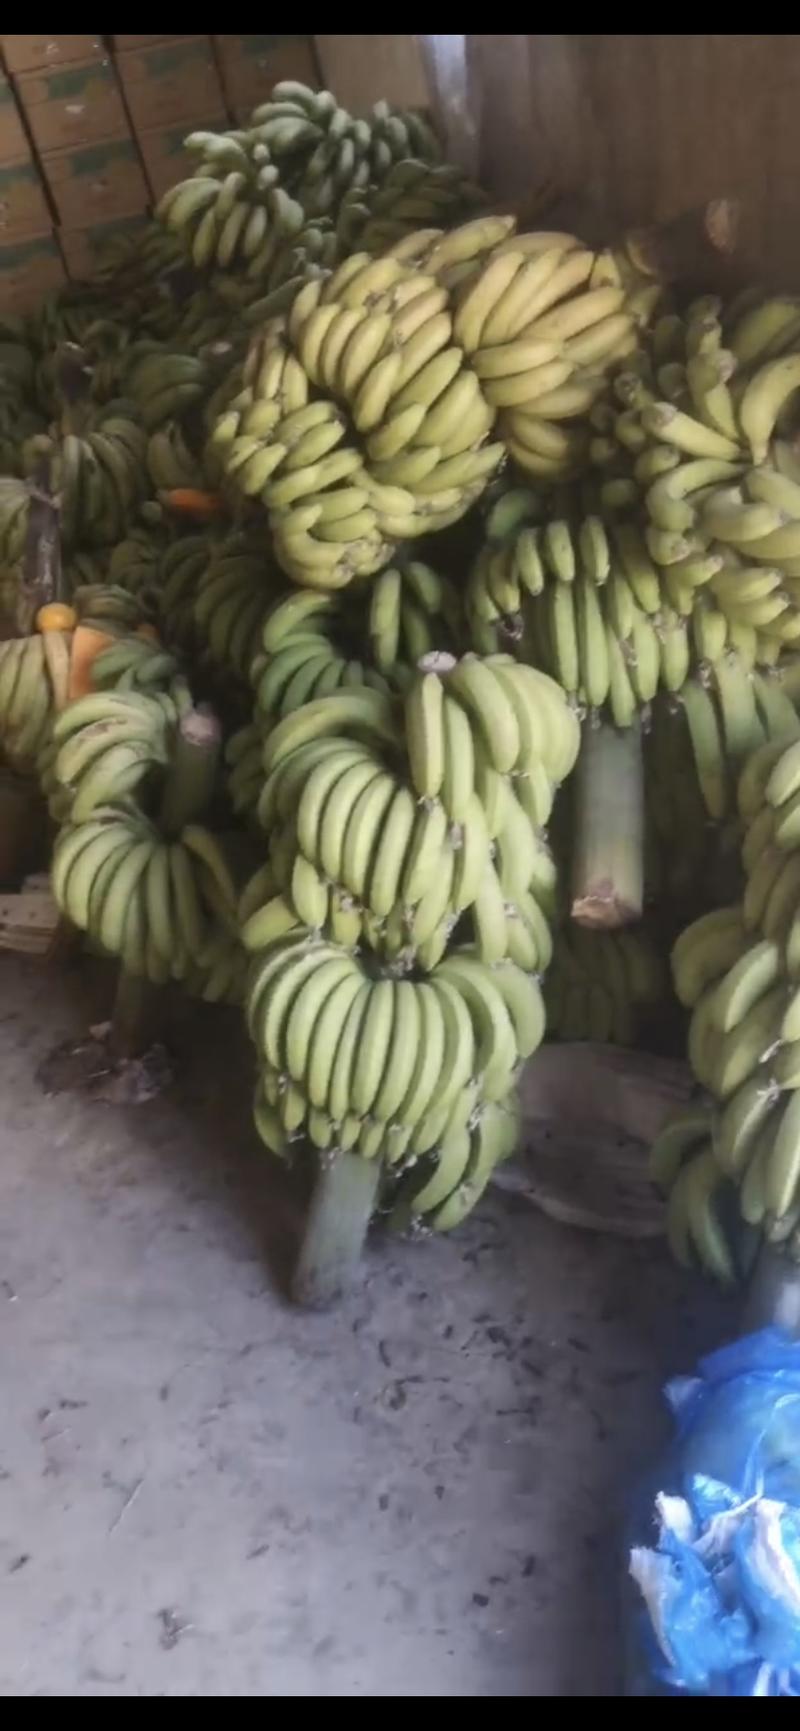 福建漳州精品香蕉………………………………